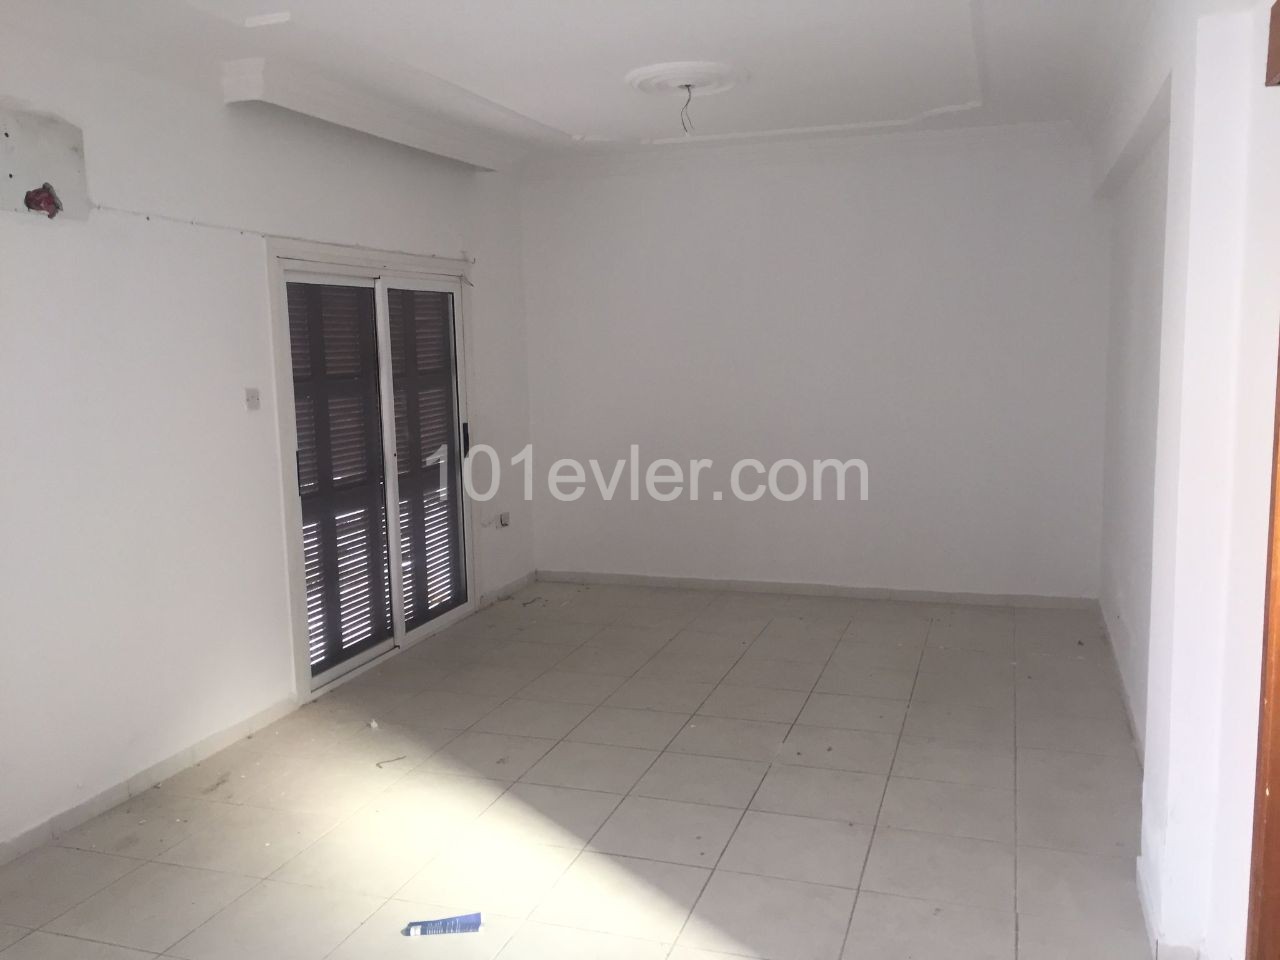 3 + 1 Doppel - Duplex-Sozialwohnung in Eckgrundstück zum Verkauf in Nikosia Taschkei Bezirk 160 m2 ** 